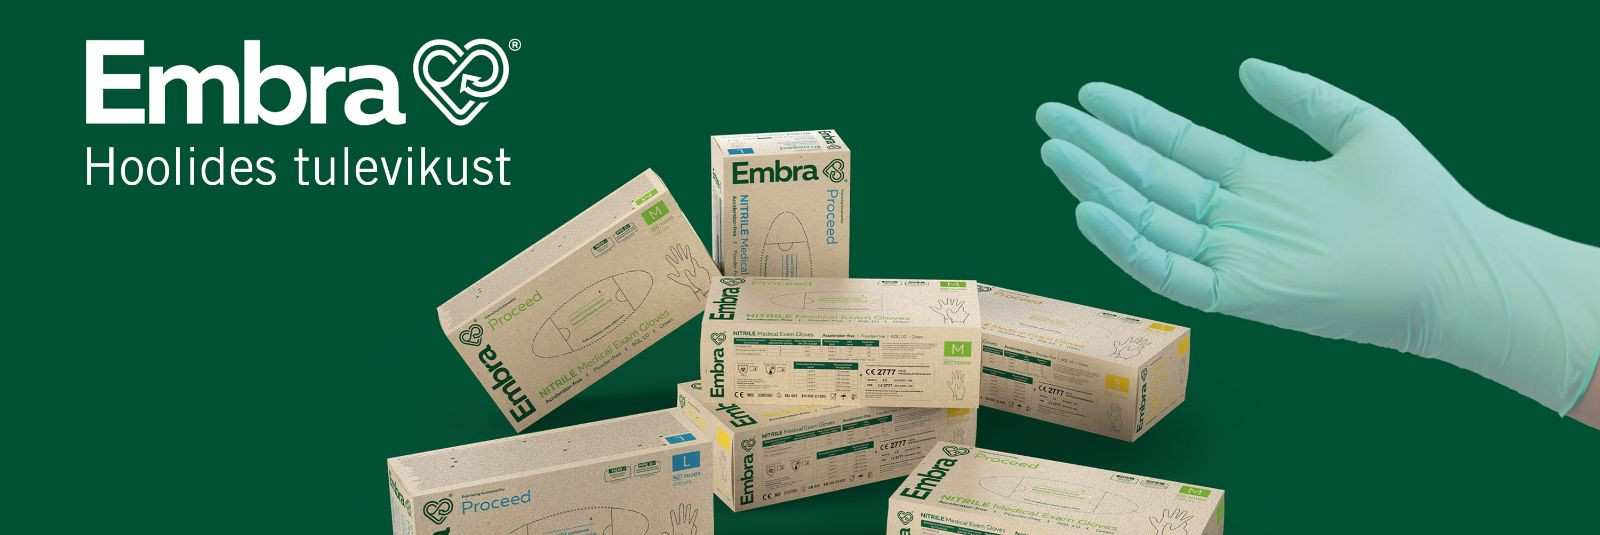 Evercare Medical ja OneMed OÜ teevad ajalugu, tuues turule uue kaubamärgi Embra, mille eesmärk on muuta tervishoiu sektor keskkonnasäästlikumaks. Esimene toode,